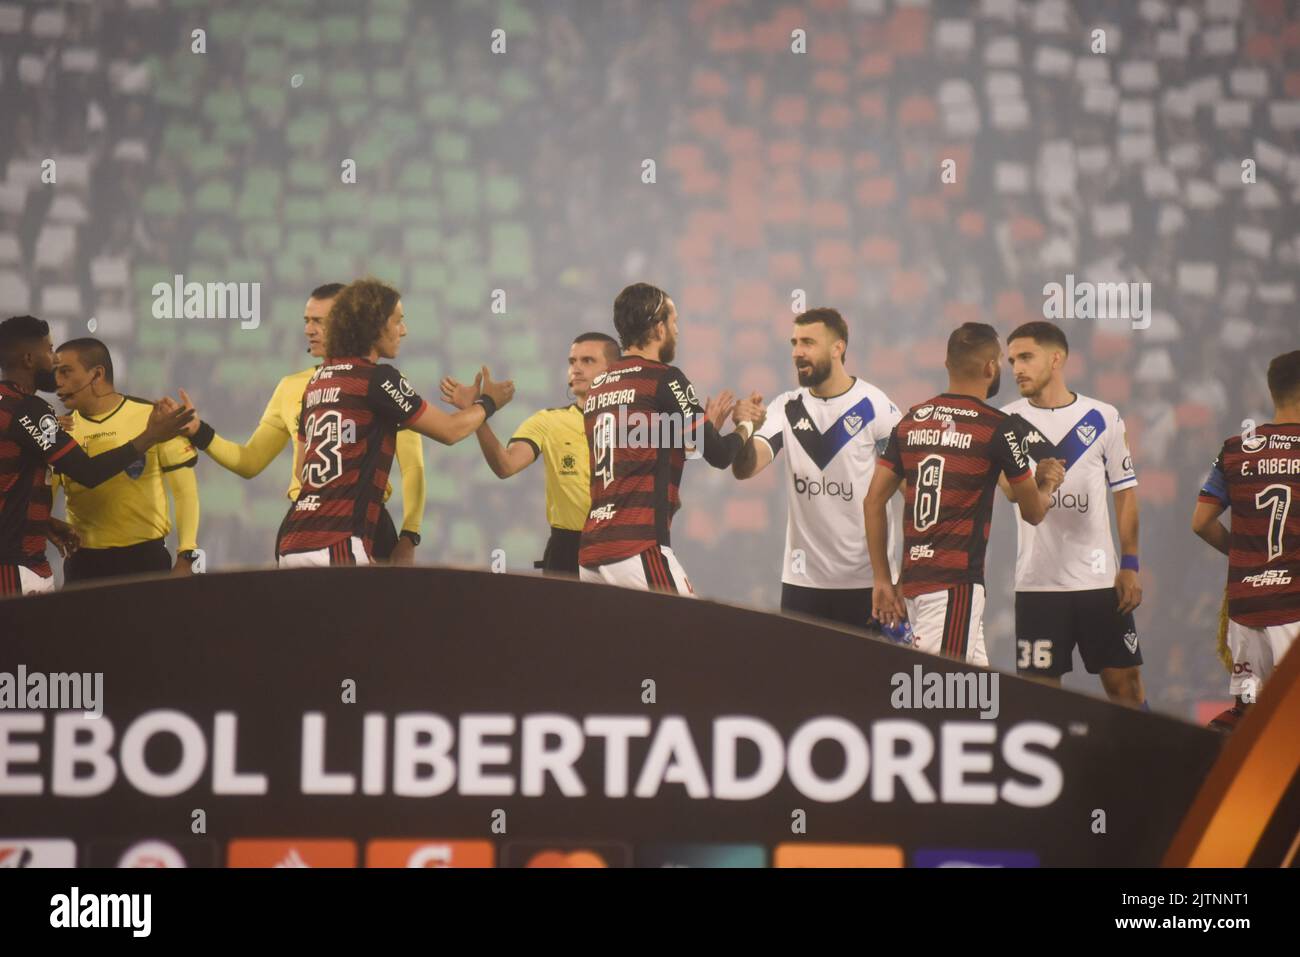 Campeonato Paulista 2023 A2: A Competição de Futebol que Promete Agitar o Estado de São Paulo